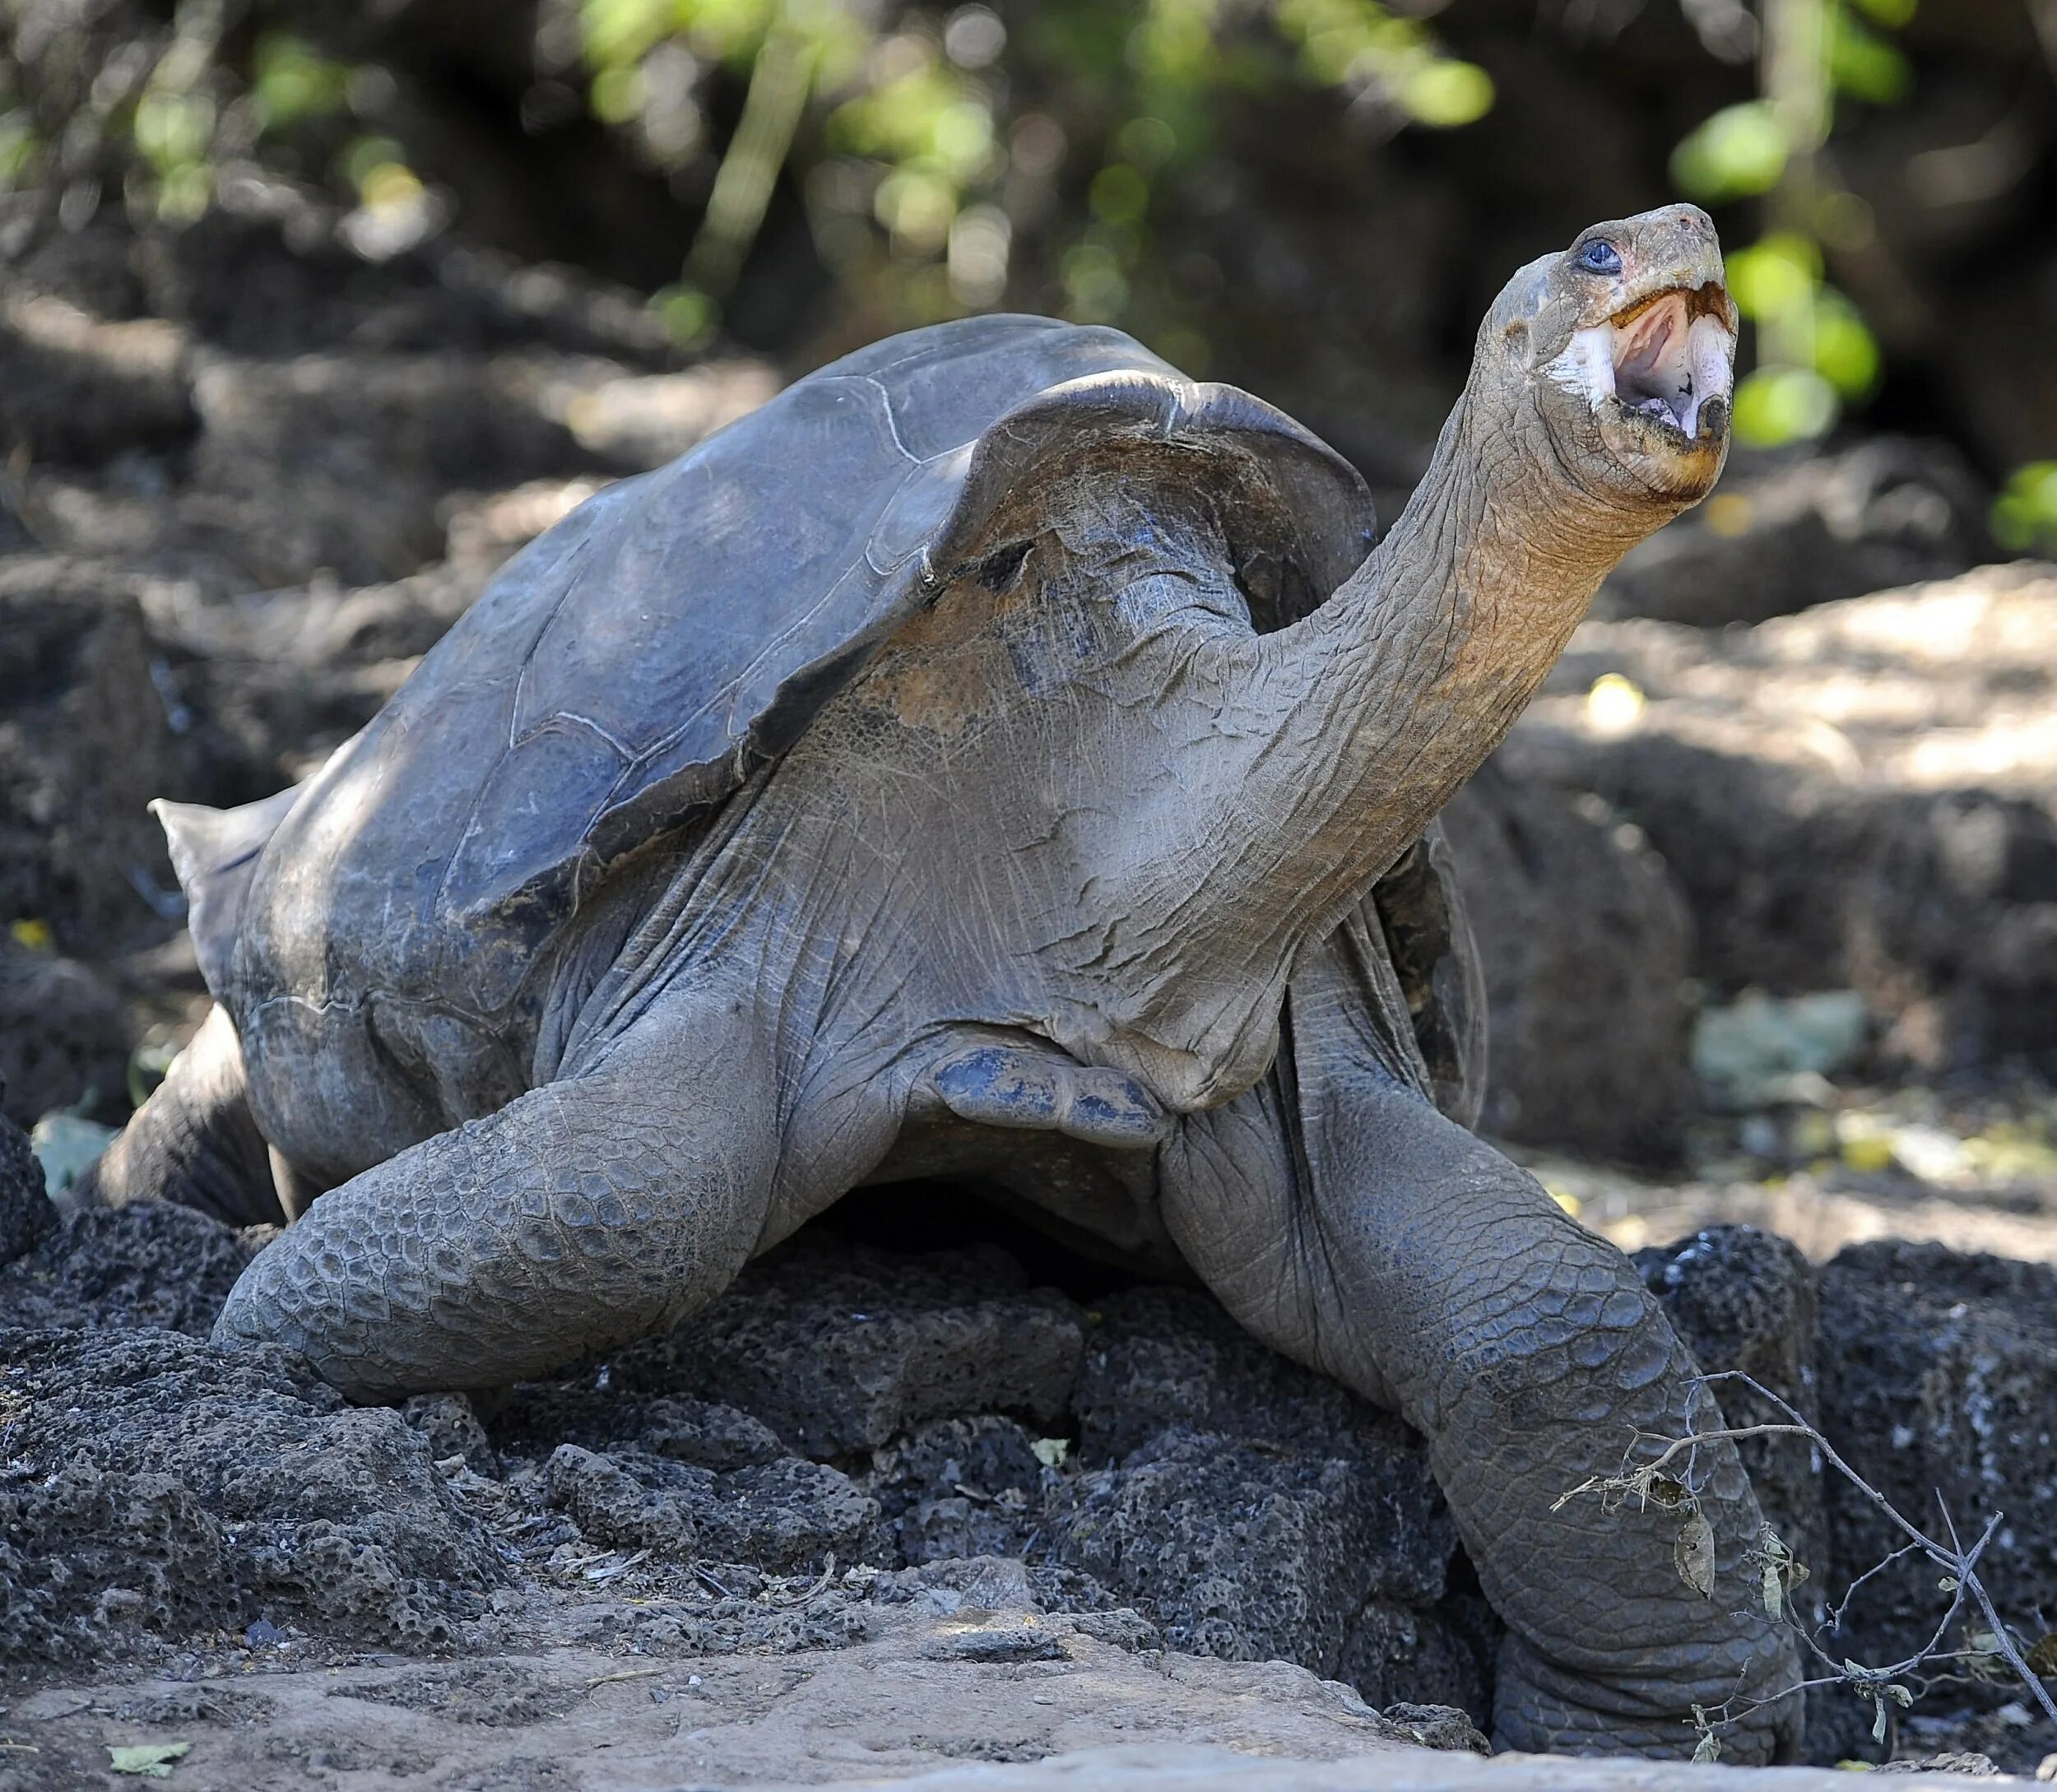 Галапагосская слоновая черепаха. Галапагосская черепаха одинокий Джордж. Галапагосские острова черепахи. Гигантская слоновая черепаха Пинта. Абингдонские слоновые черепахи